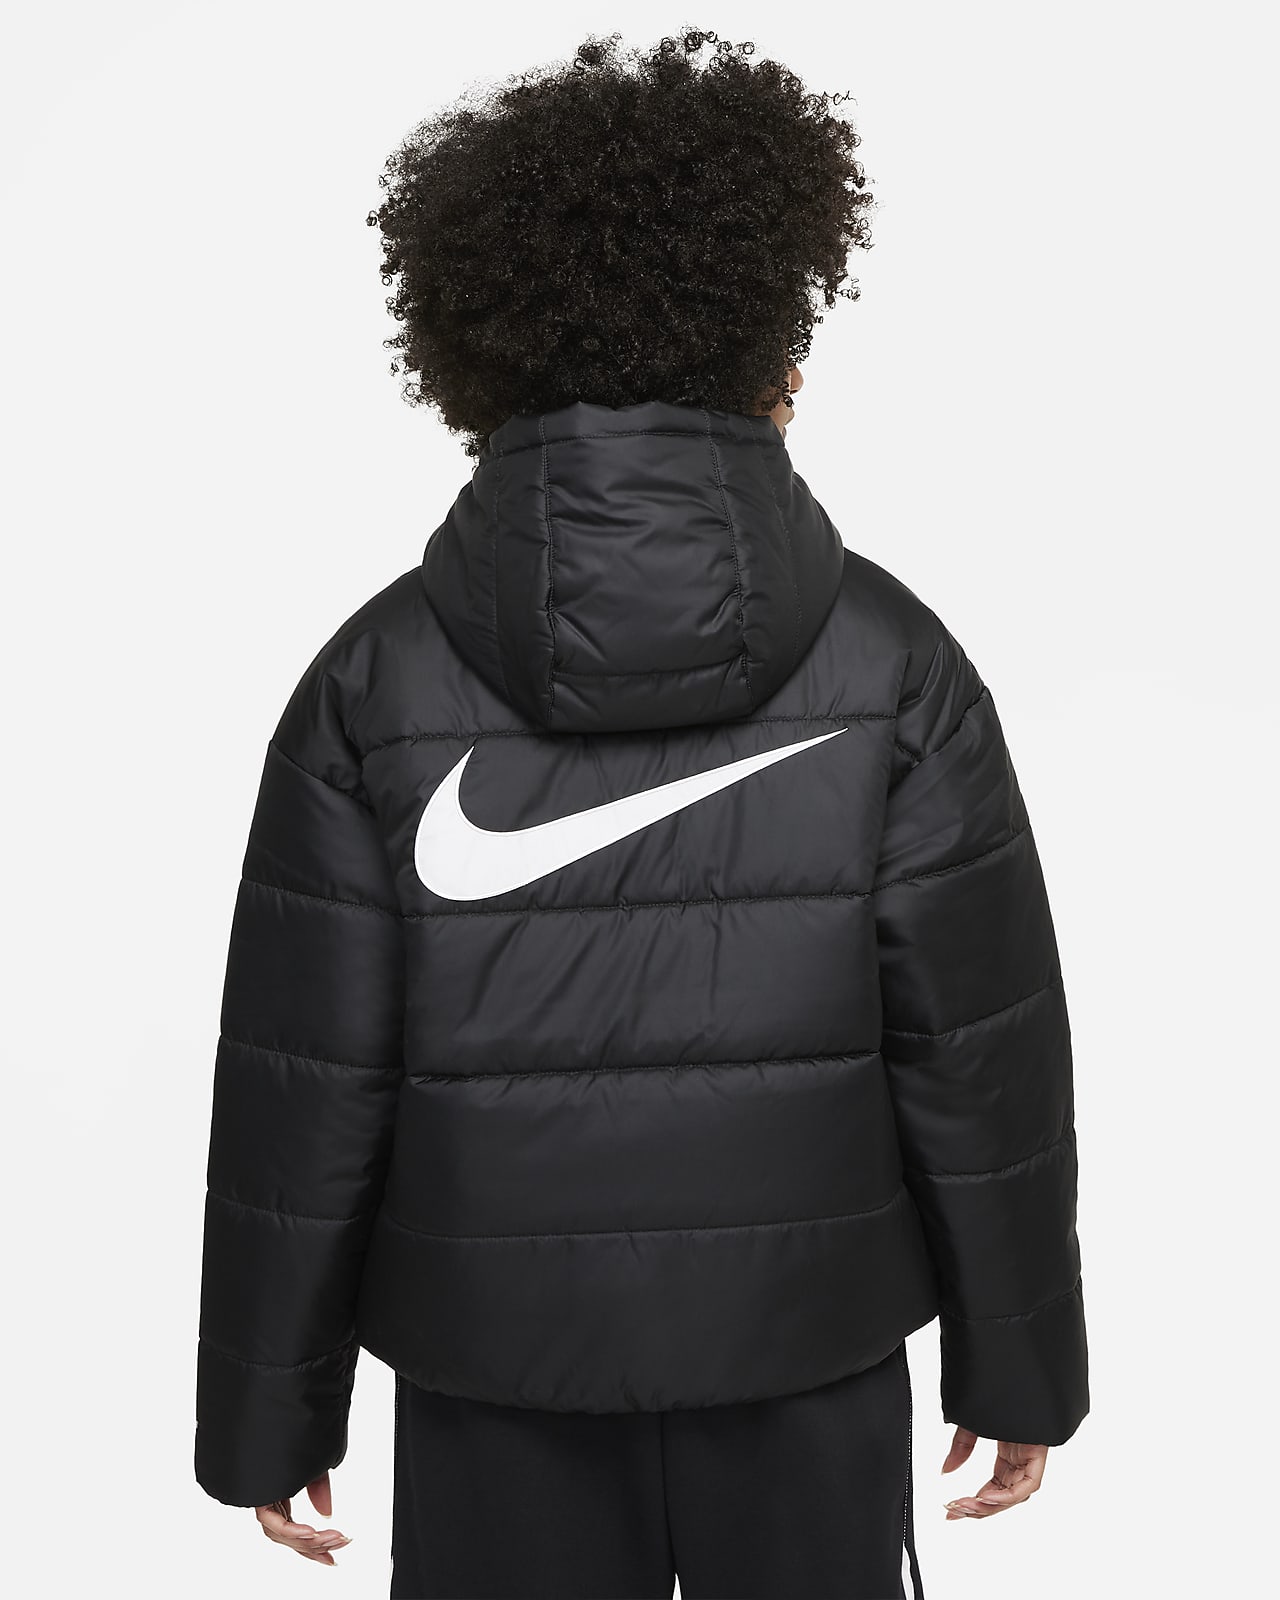 Contradicción Dirigir traición Nike Sportswear Therma-FIT Repel Women's Hooded Jacket. Nike.com